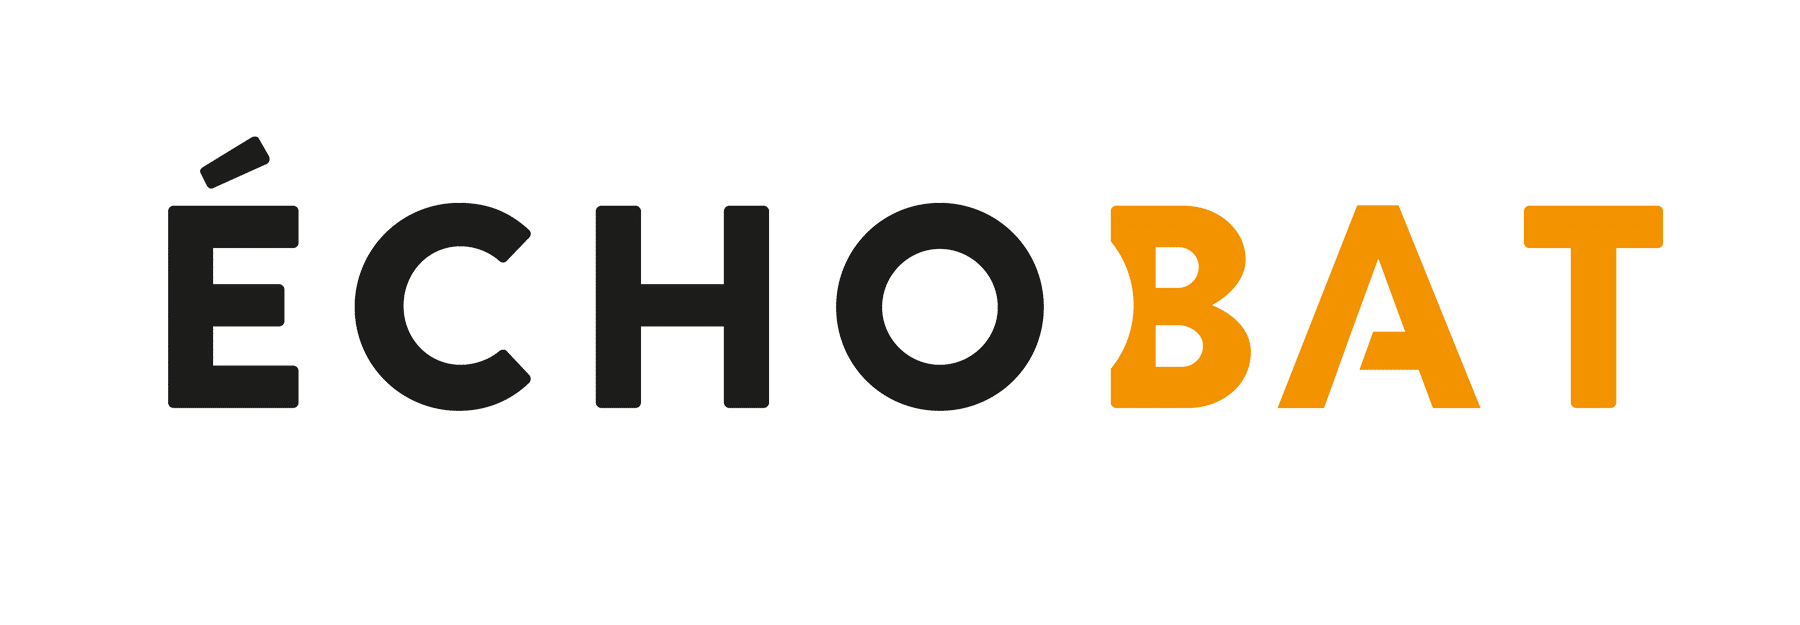 Echobat-logo